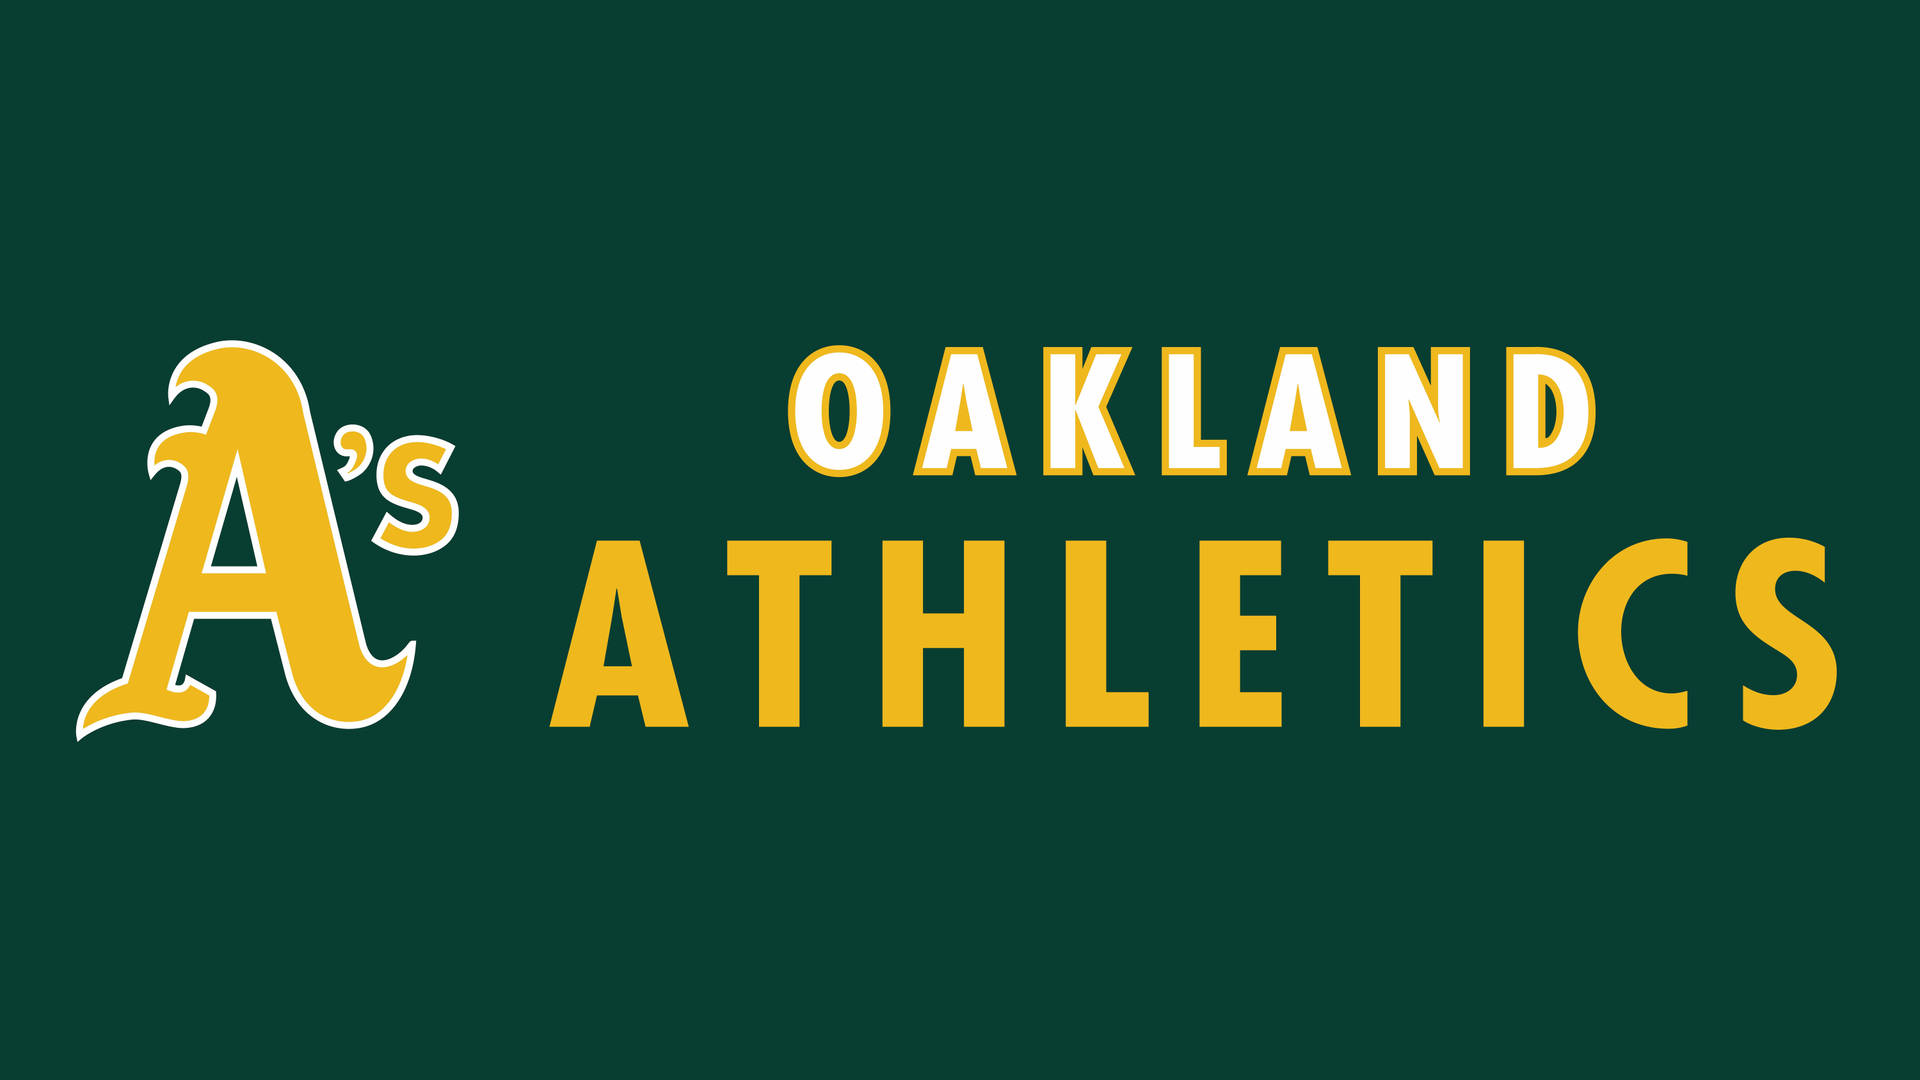 Imágenes De Oakland Athletics